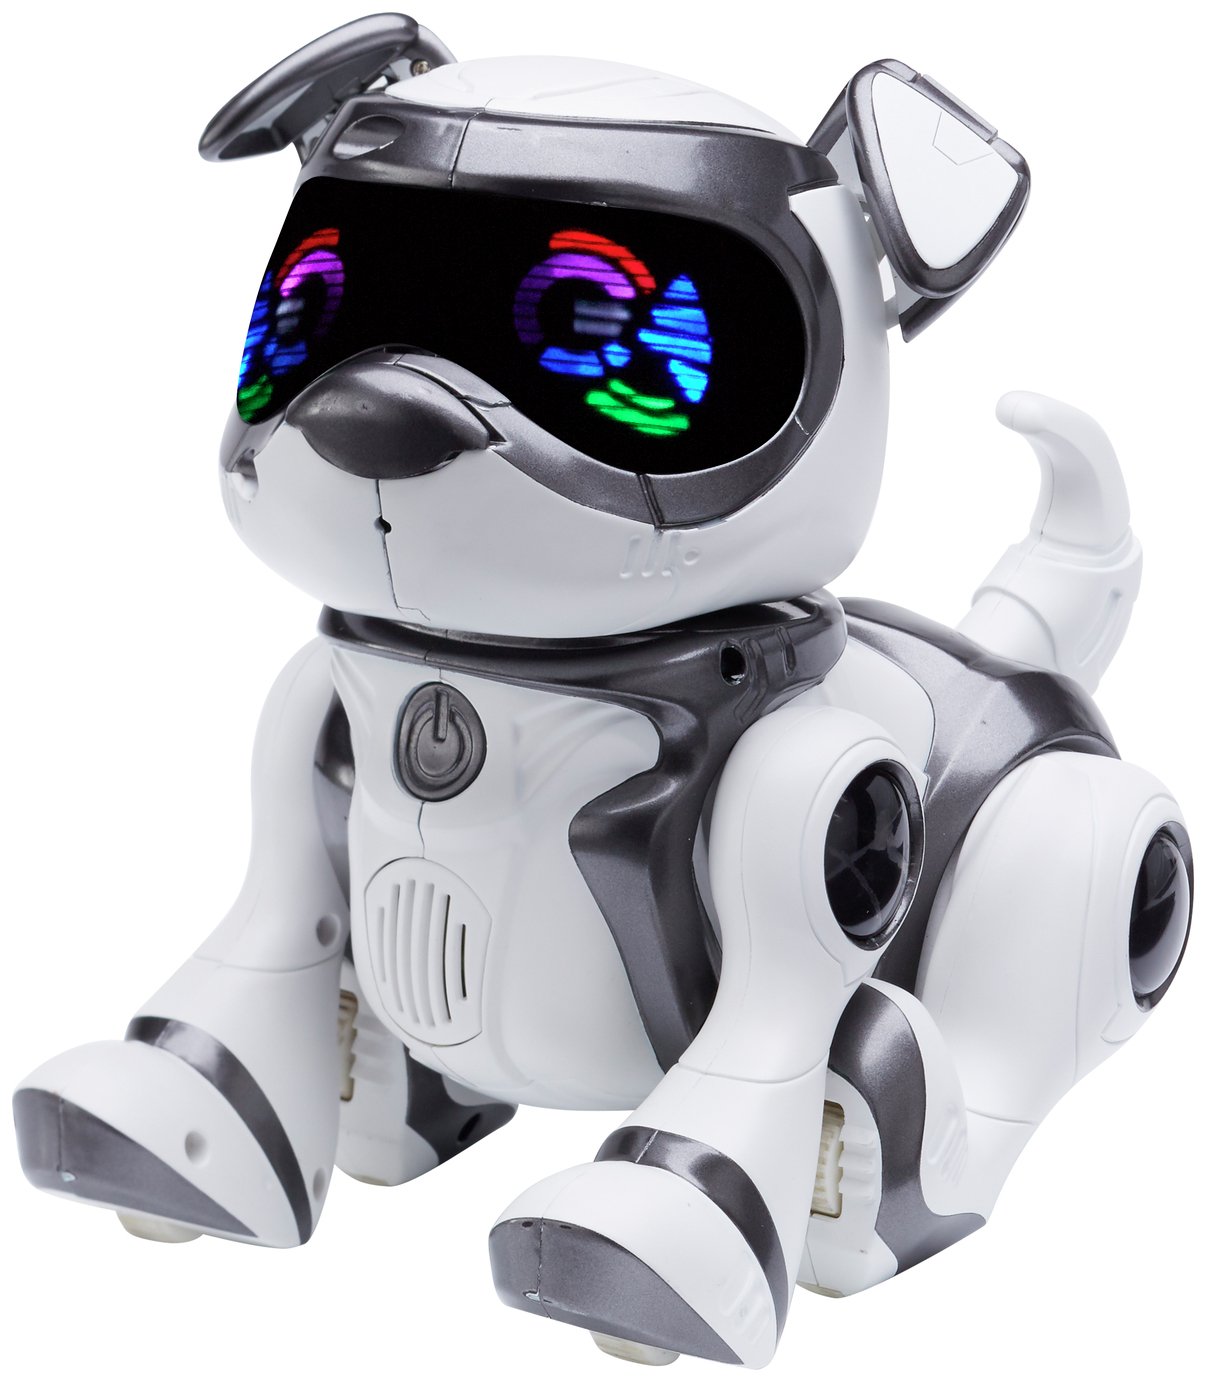 Teksta Voice Recognition Robot Puppy Review